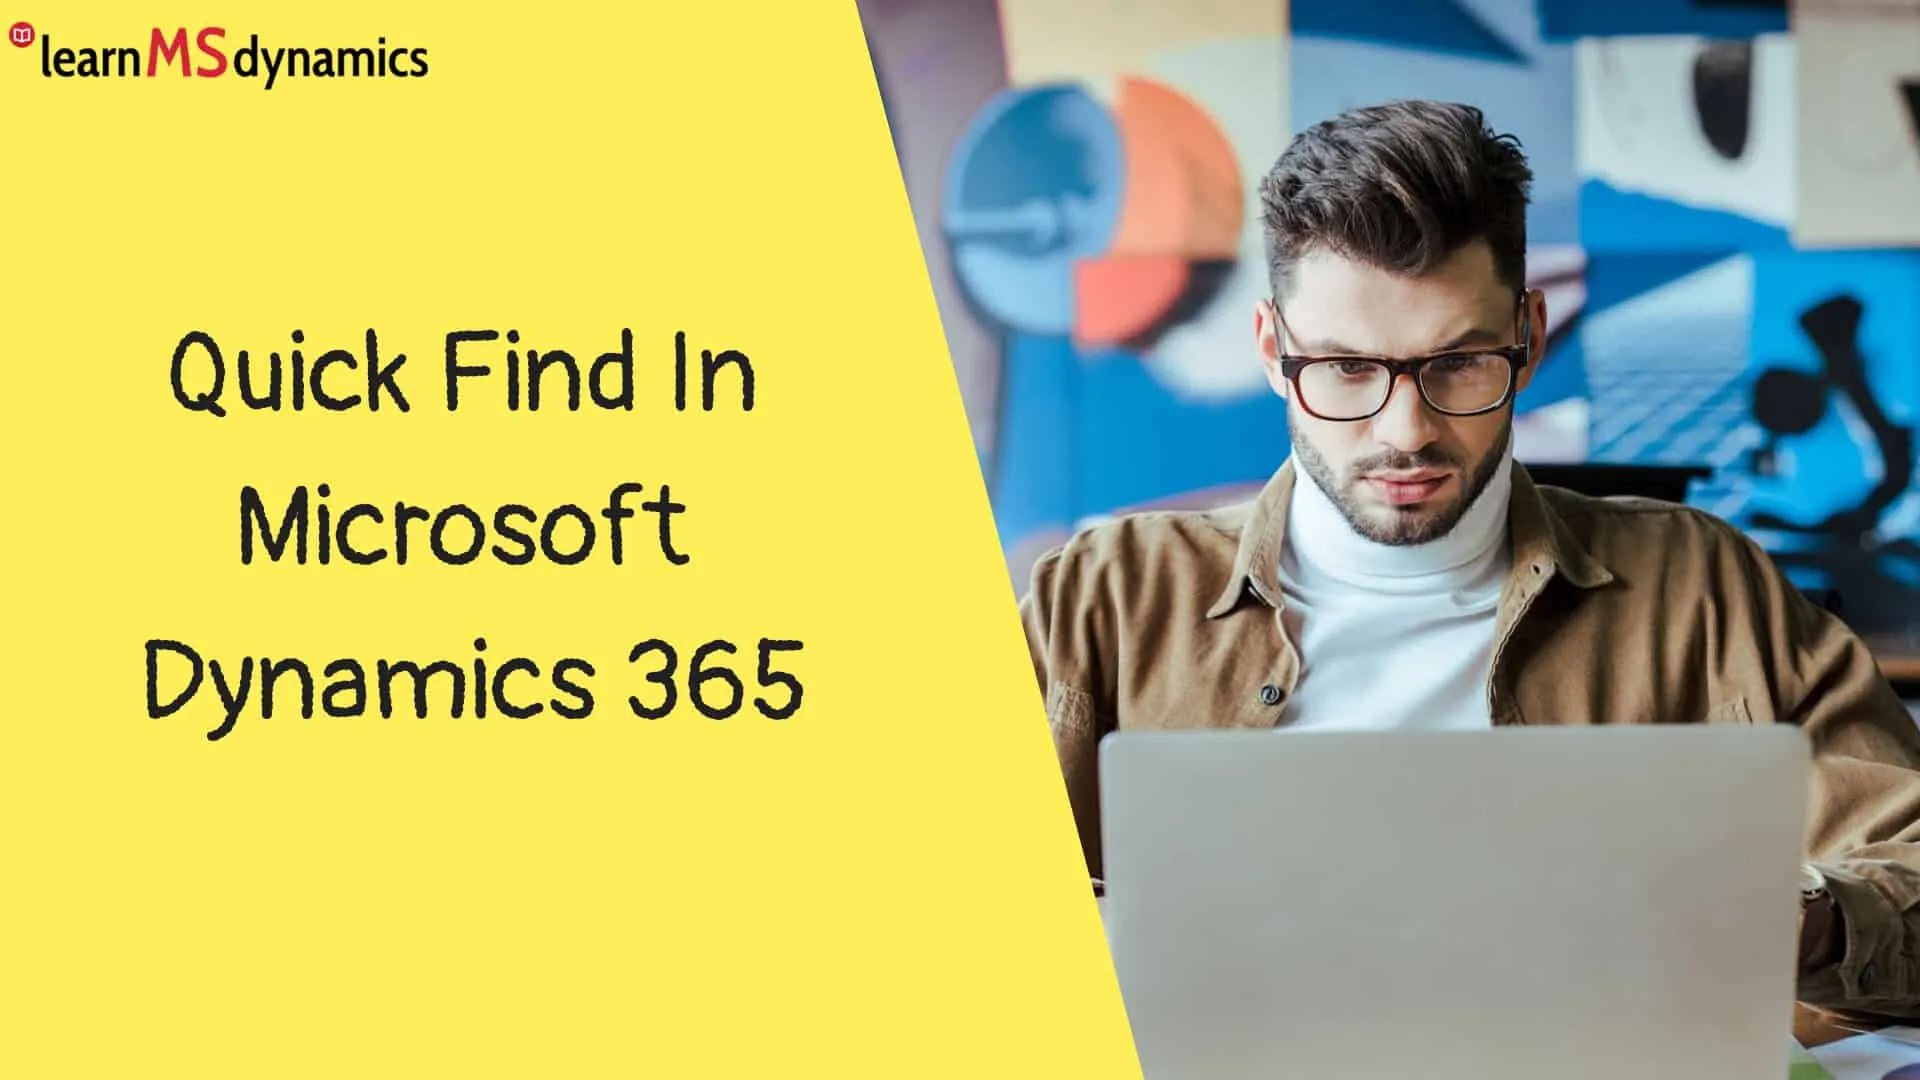 Quick Find In Microsoft Dynamics 365